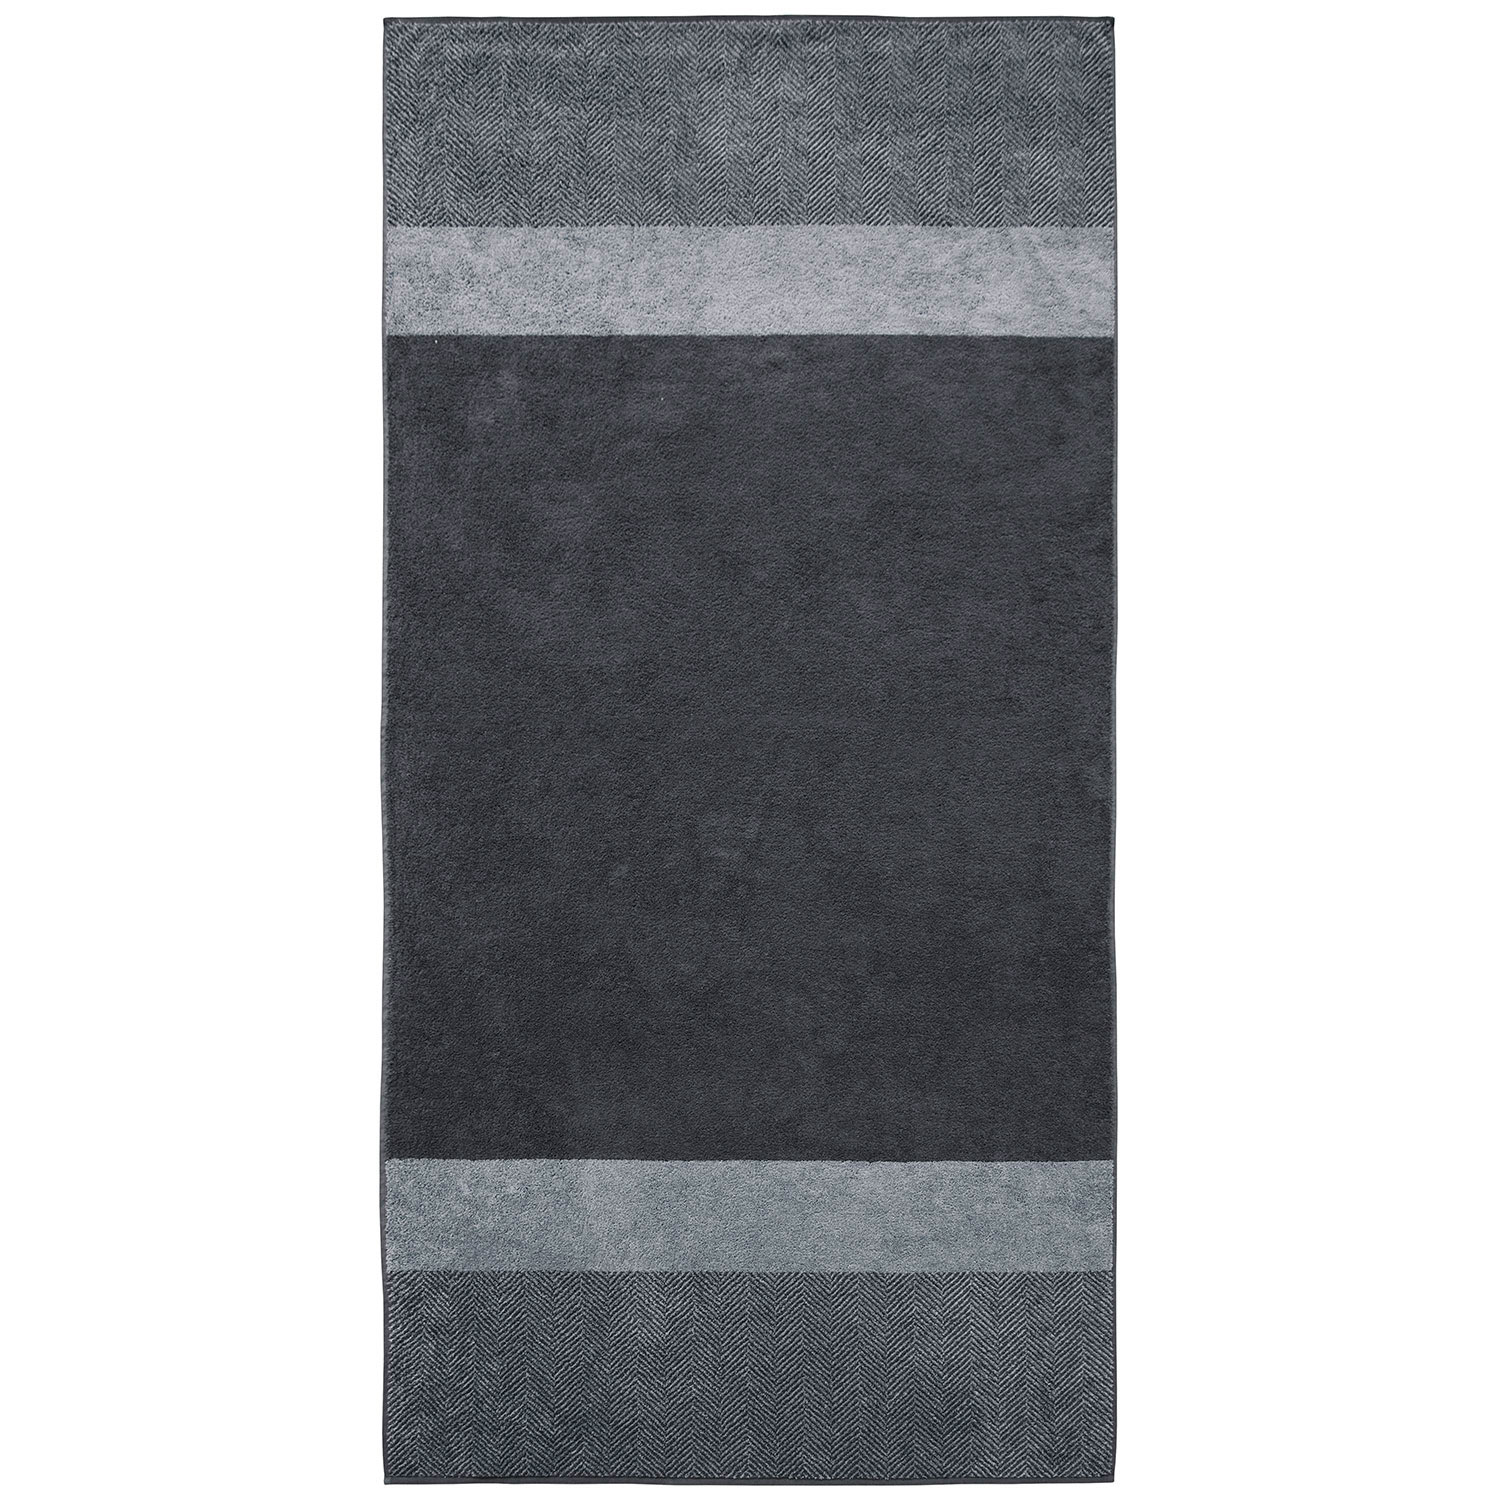 Baumwolle, Sauna, Two-Tone Stripe, blau, silber | Dyckhoff GmbH